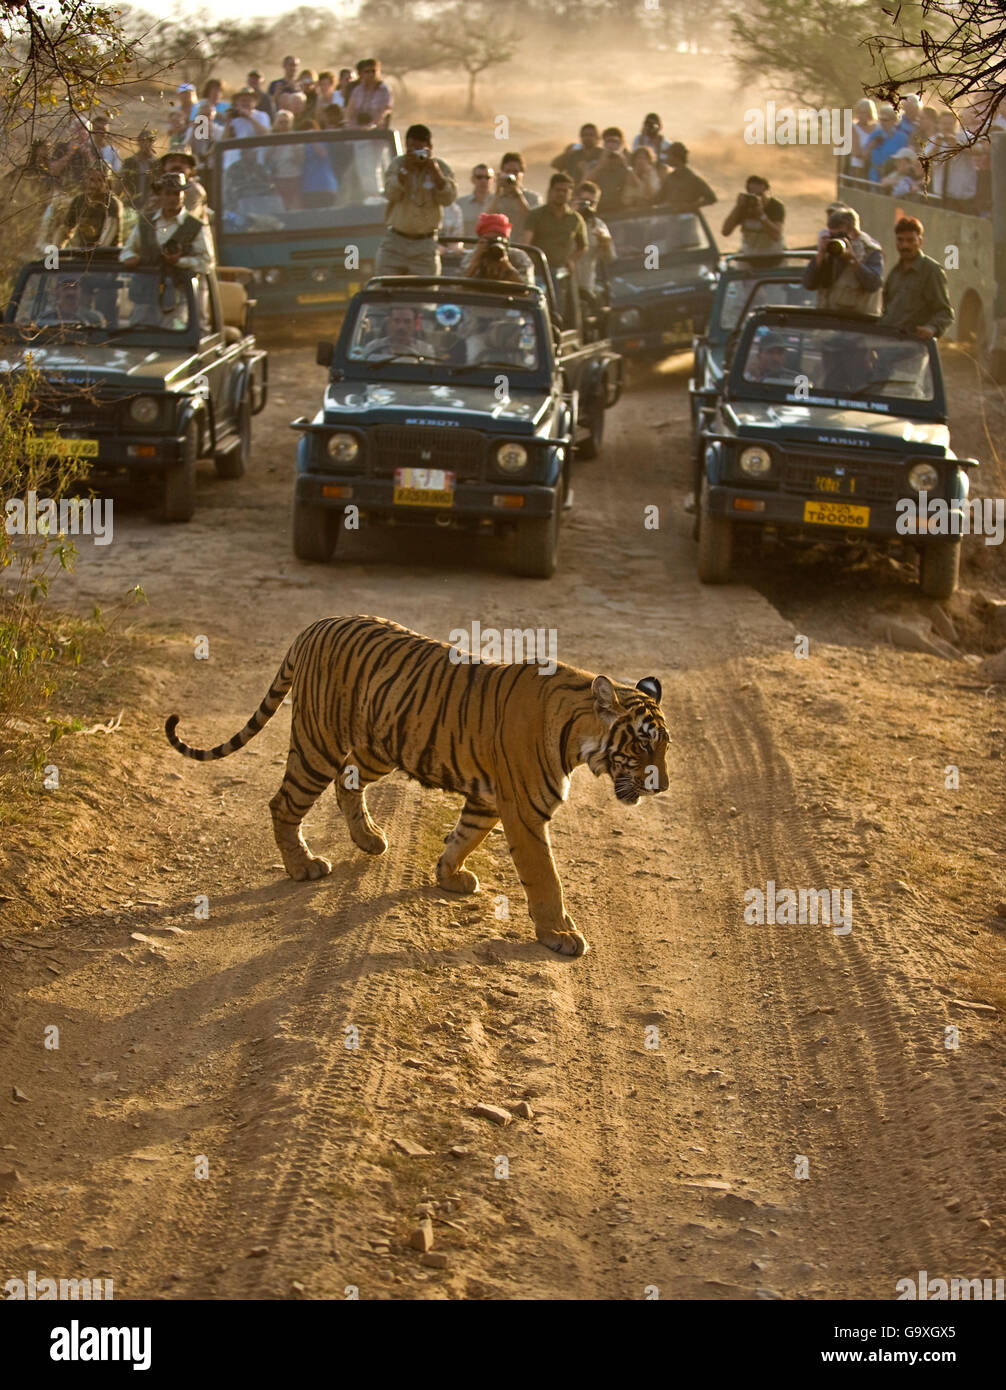 Tigre du Bengale (Panthera tigris tigris) avec les touristes à regarder des voitures, Ranthambore, Inde Banque D'Images